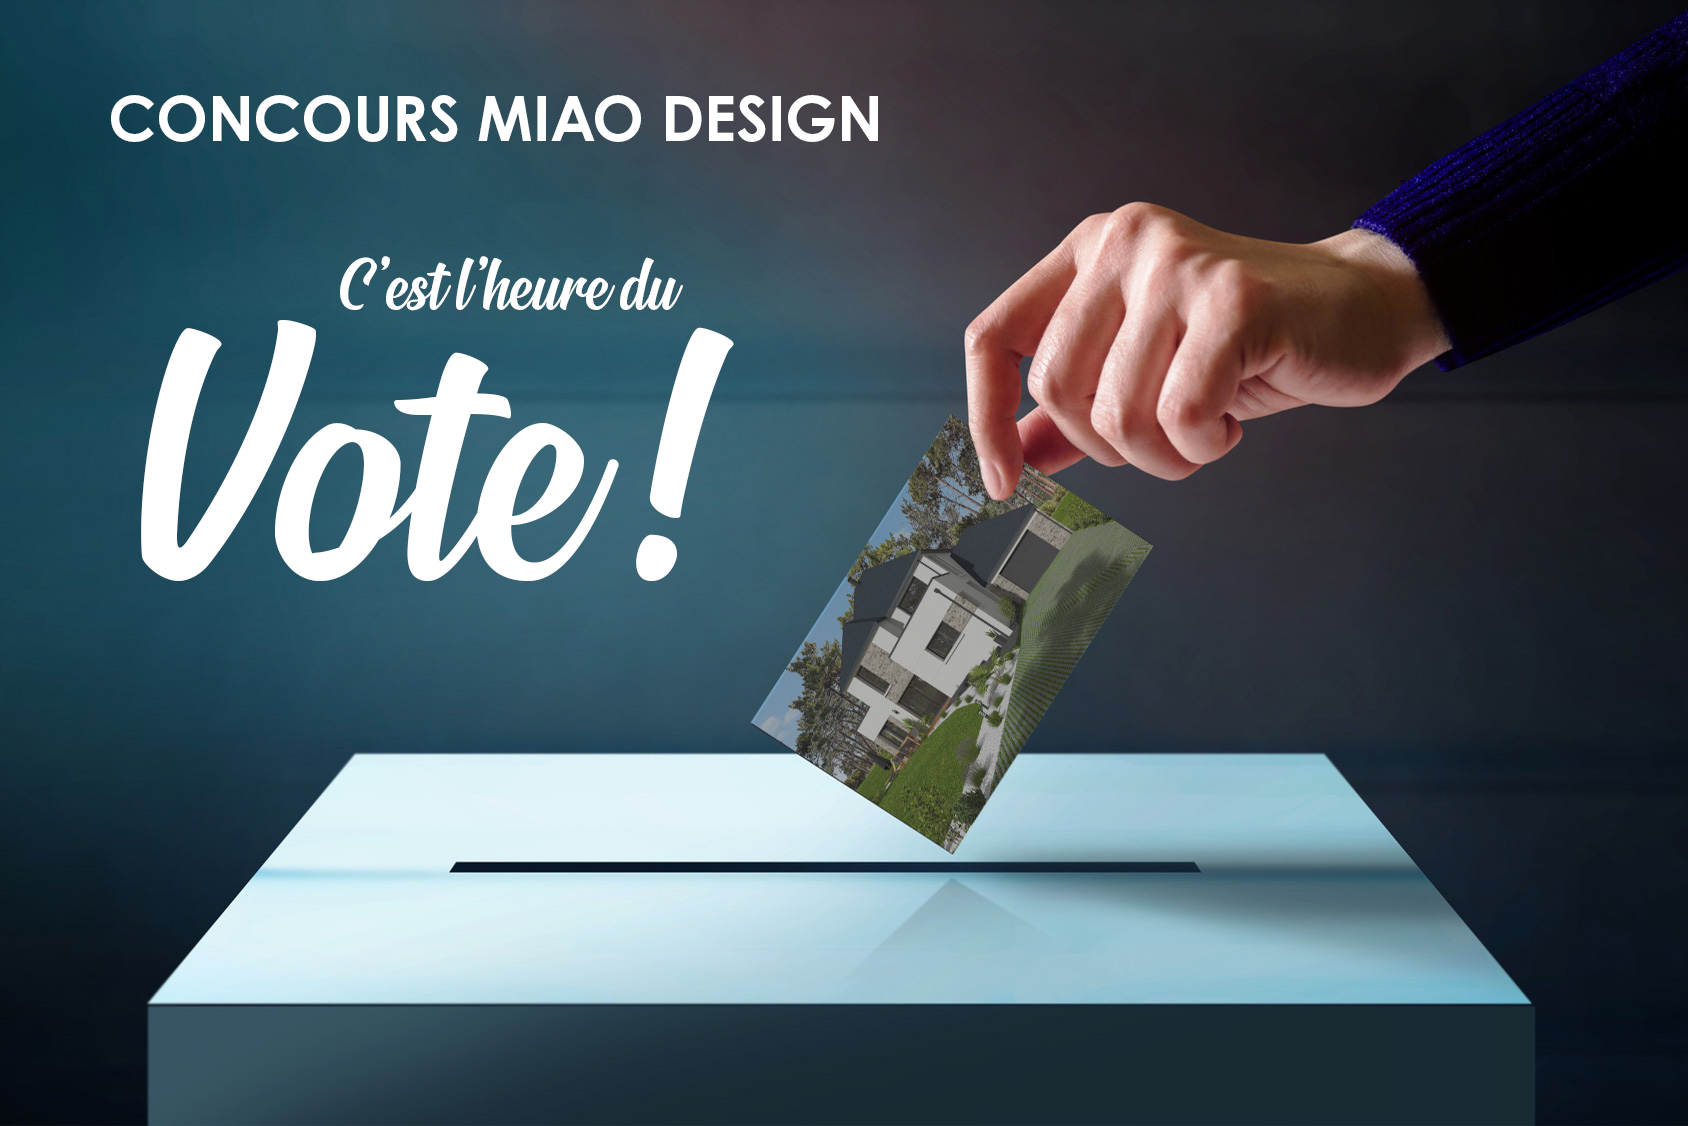 Concours Miao design 2020 vote